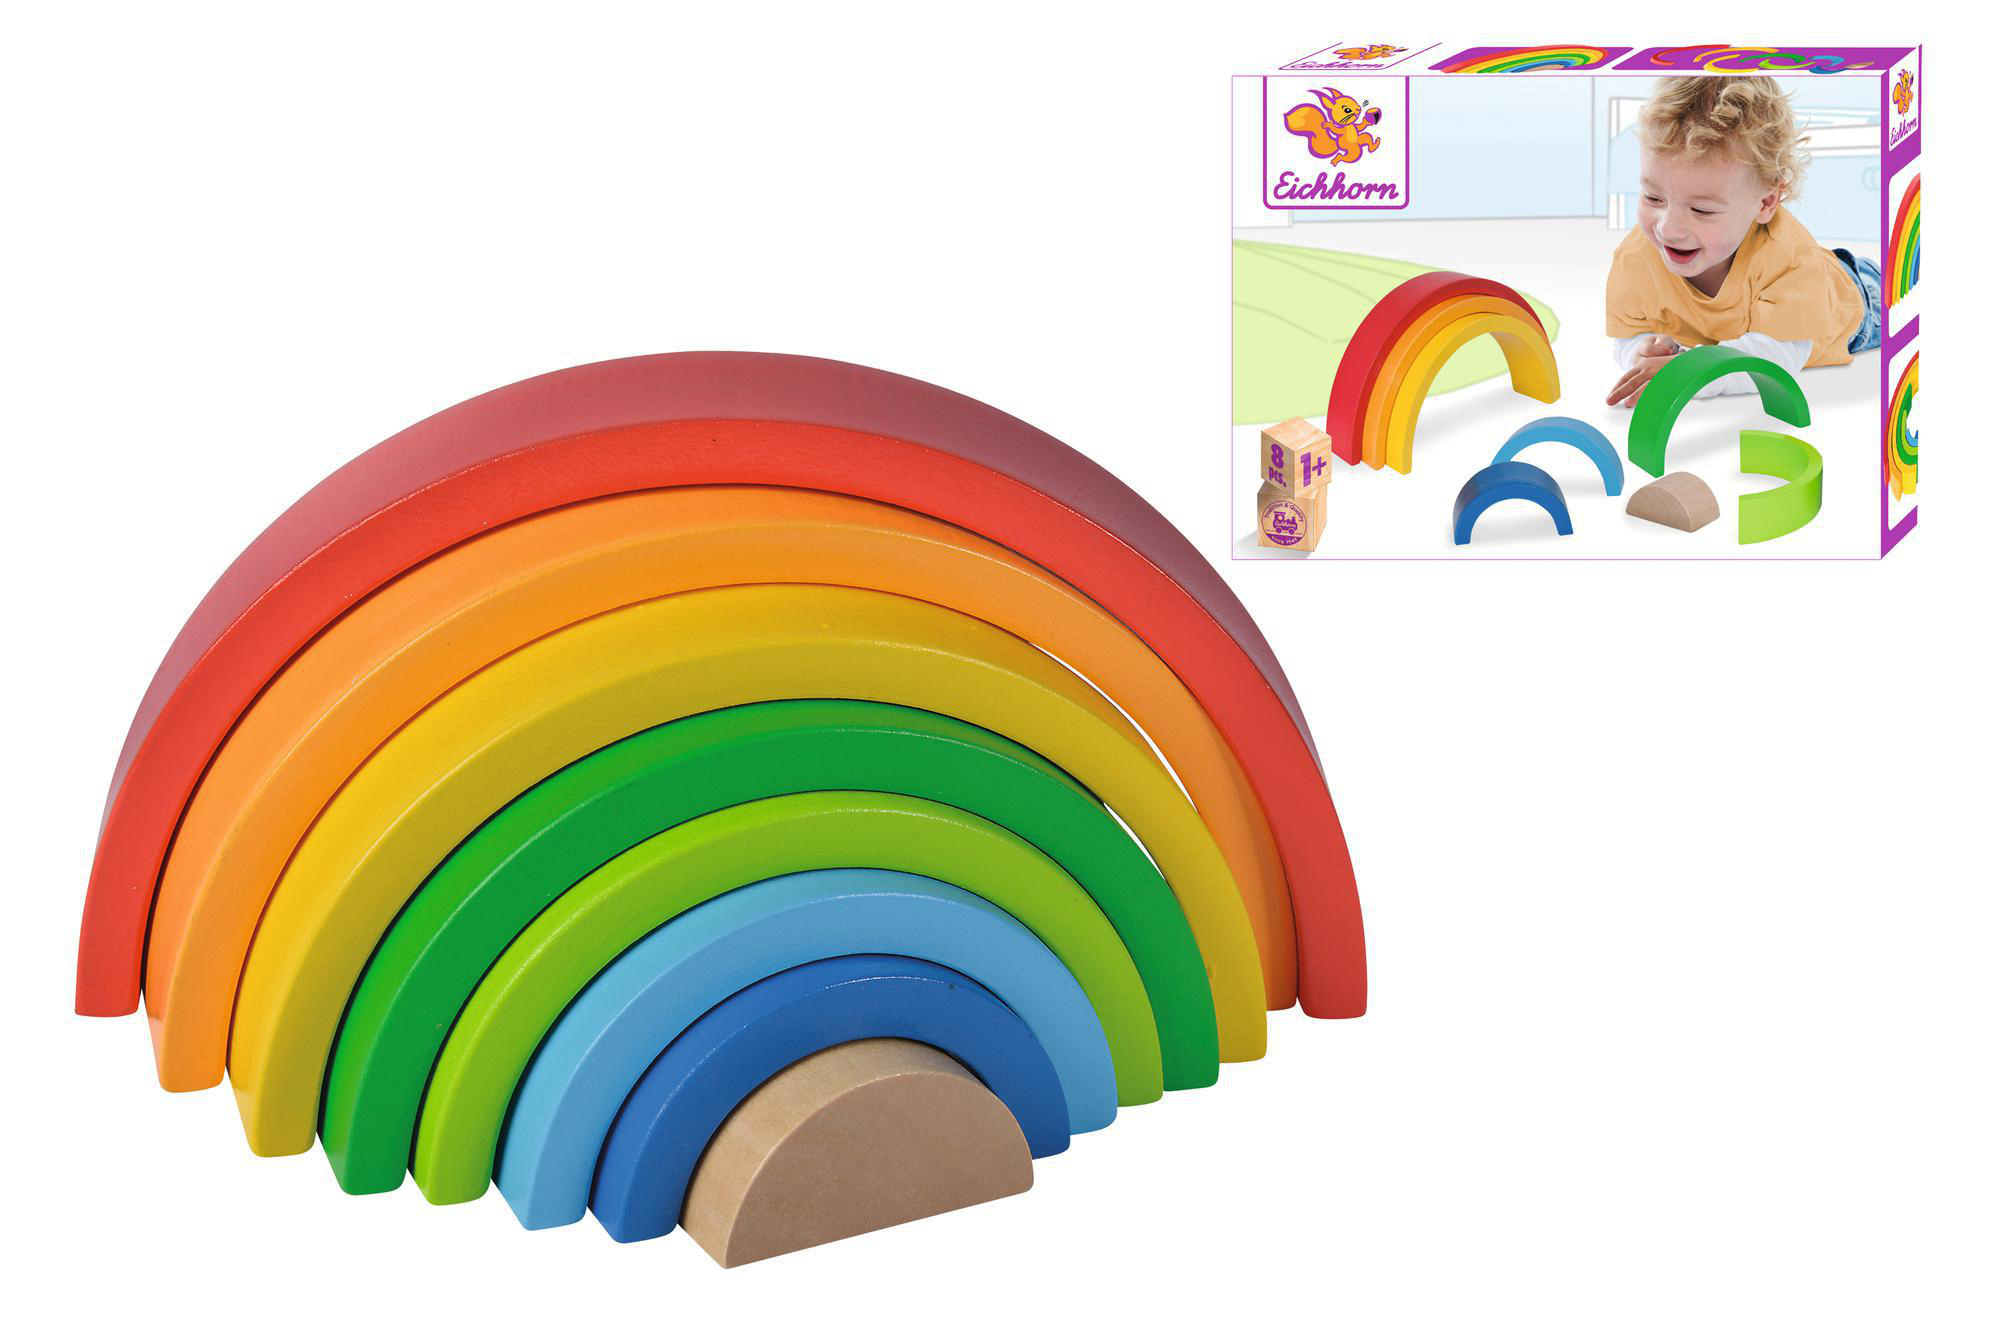 Mehrfarbig Regenbogen EICHHORN Stapelspielzeug